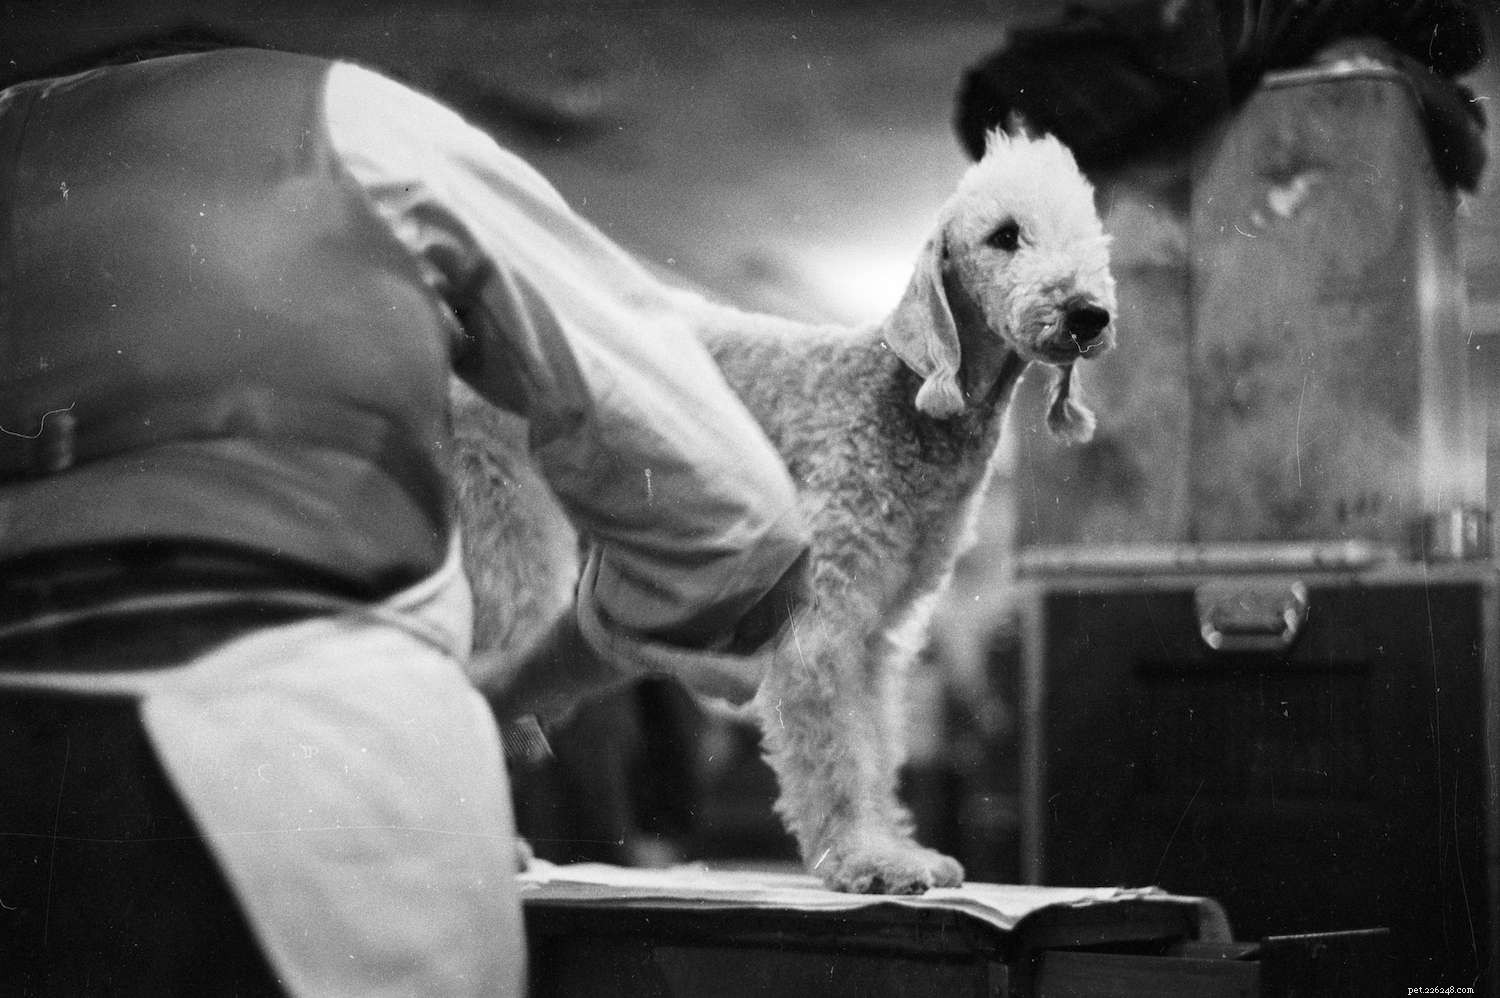 Bedlington Terrier:perfil da raça do cão